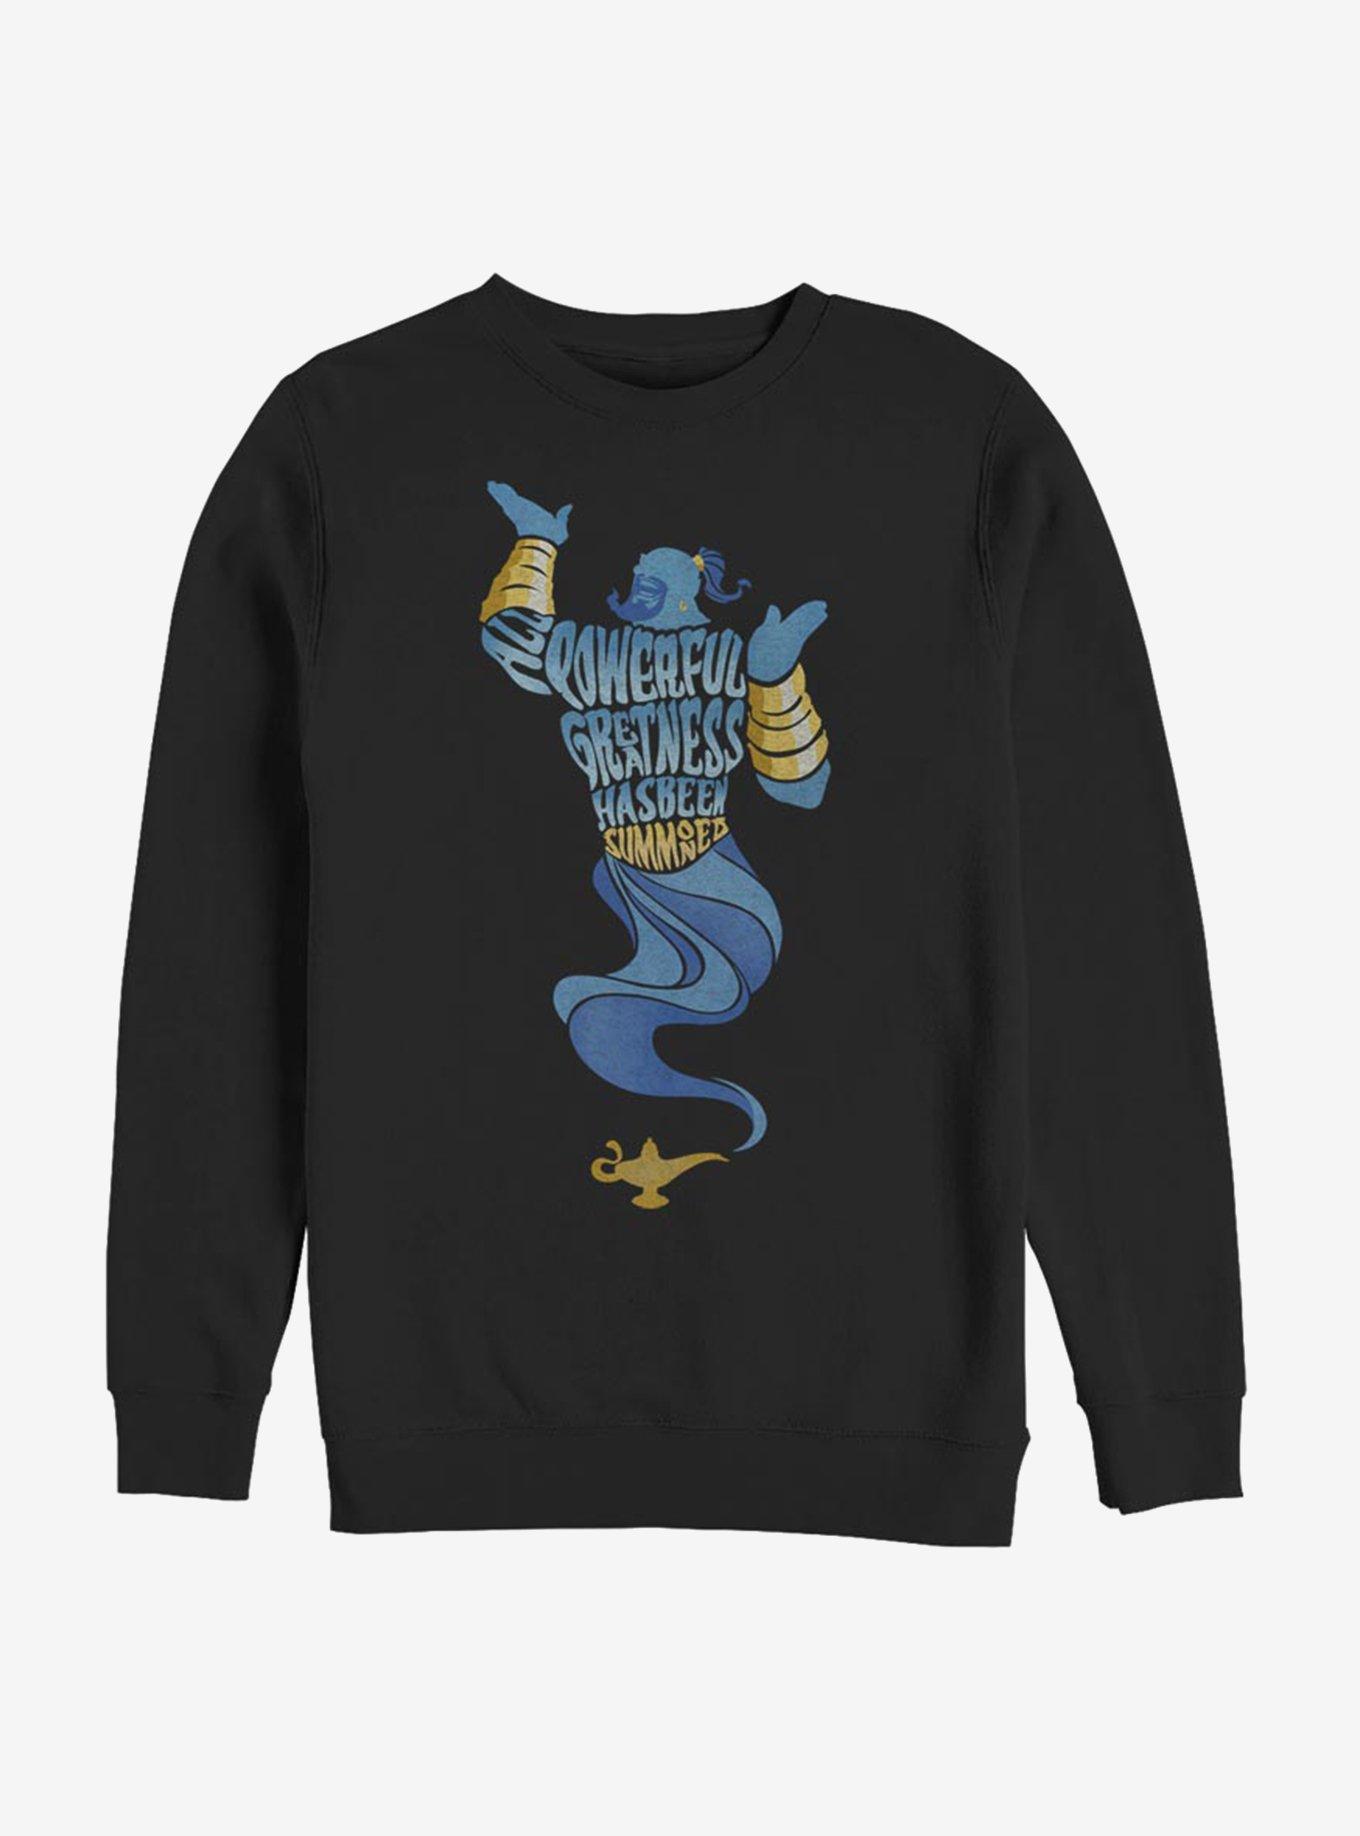 Disney Aladdin 2019 Another All Powerful Genie Sweatshirt